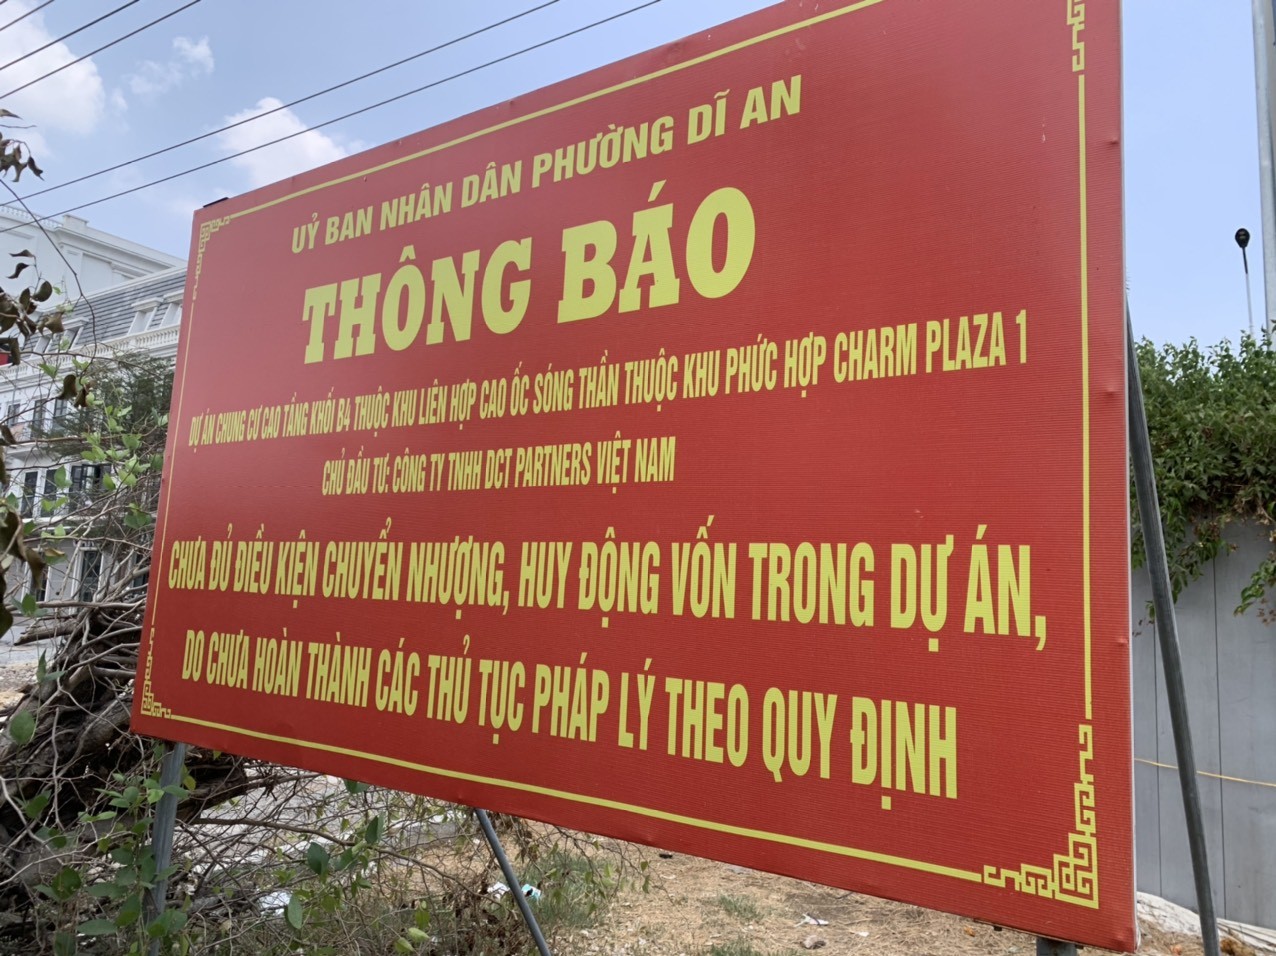 부동산 - Binh Duong: 아파트 구매자에게 참 다이아몬드 프로젝트의 합법성에 주의하라고 조언